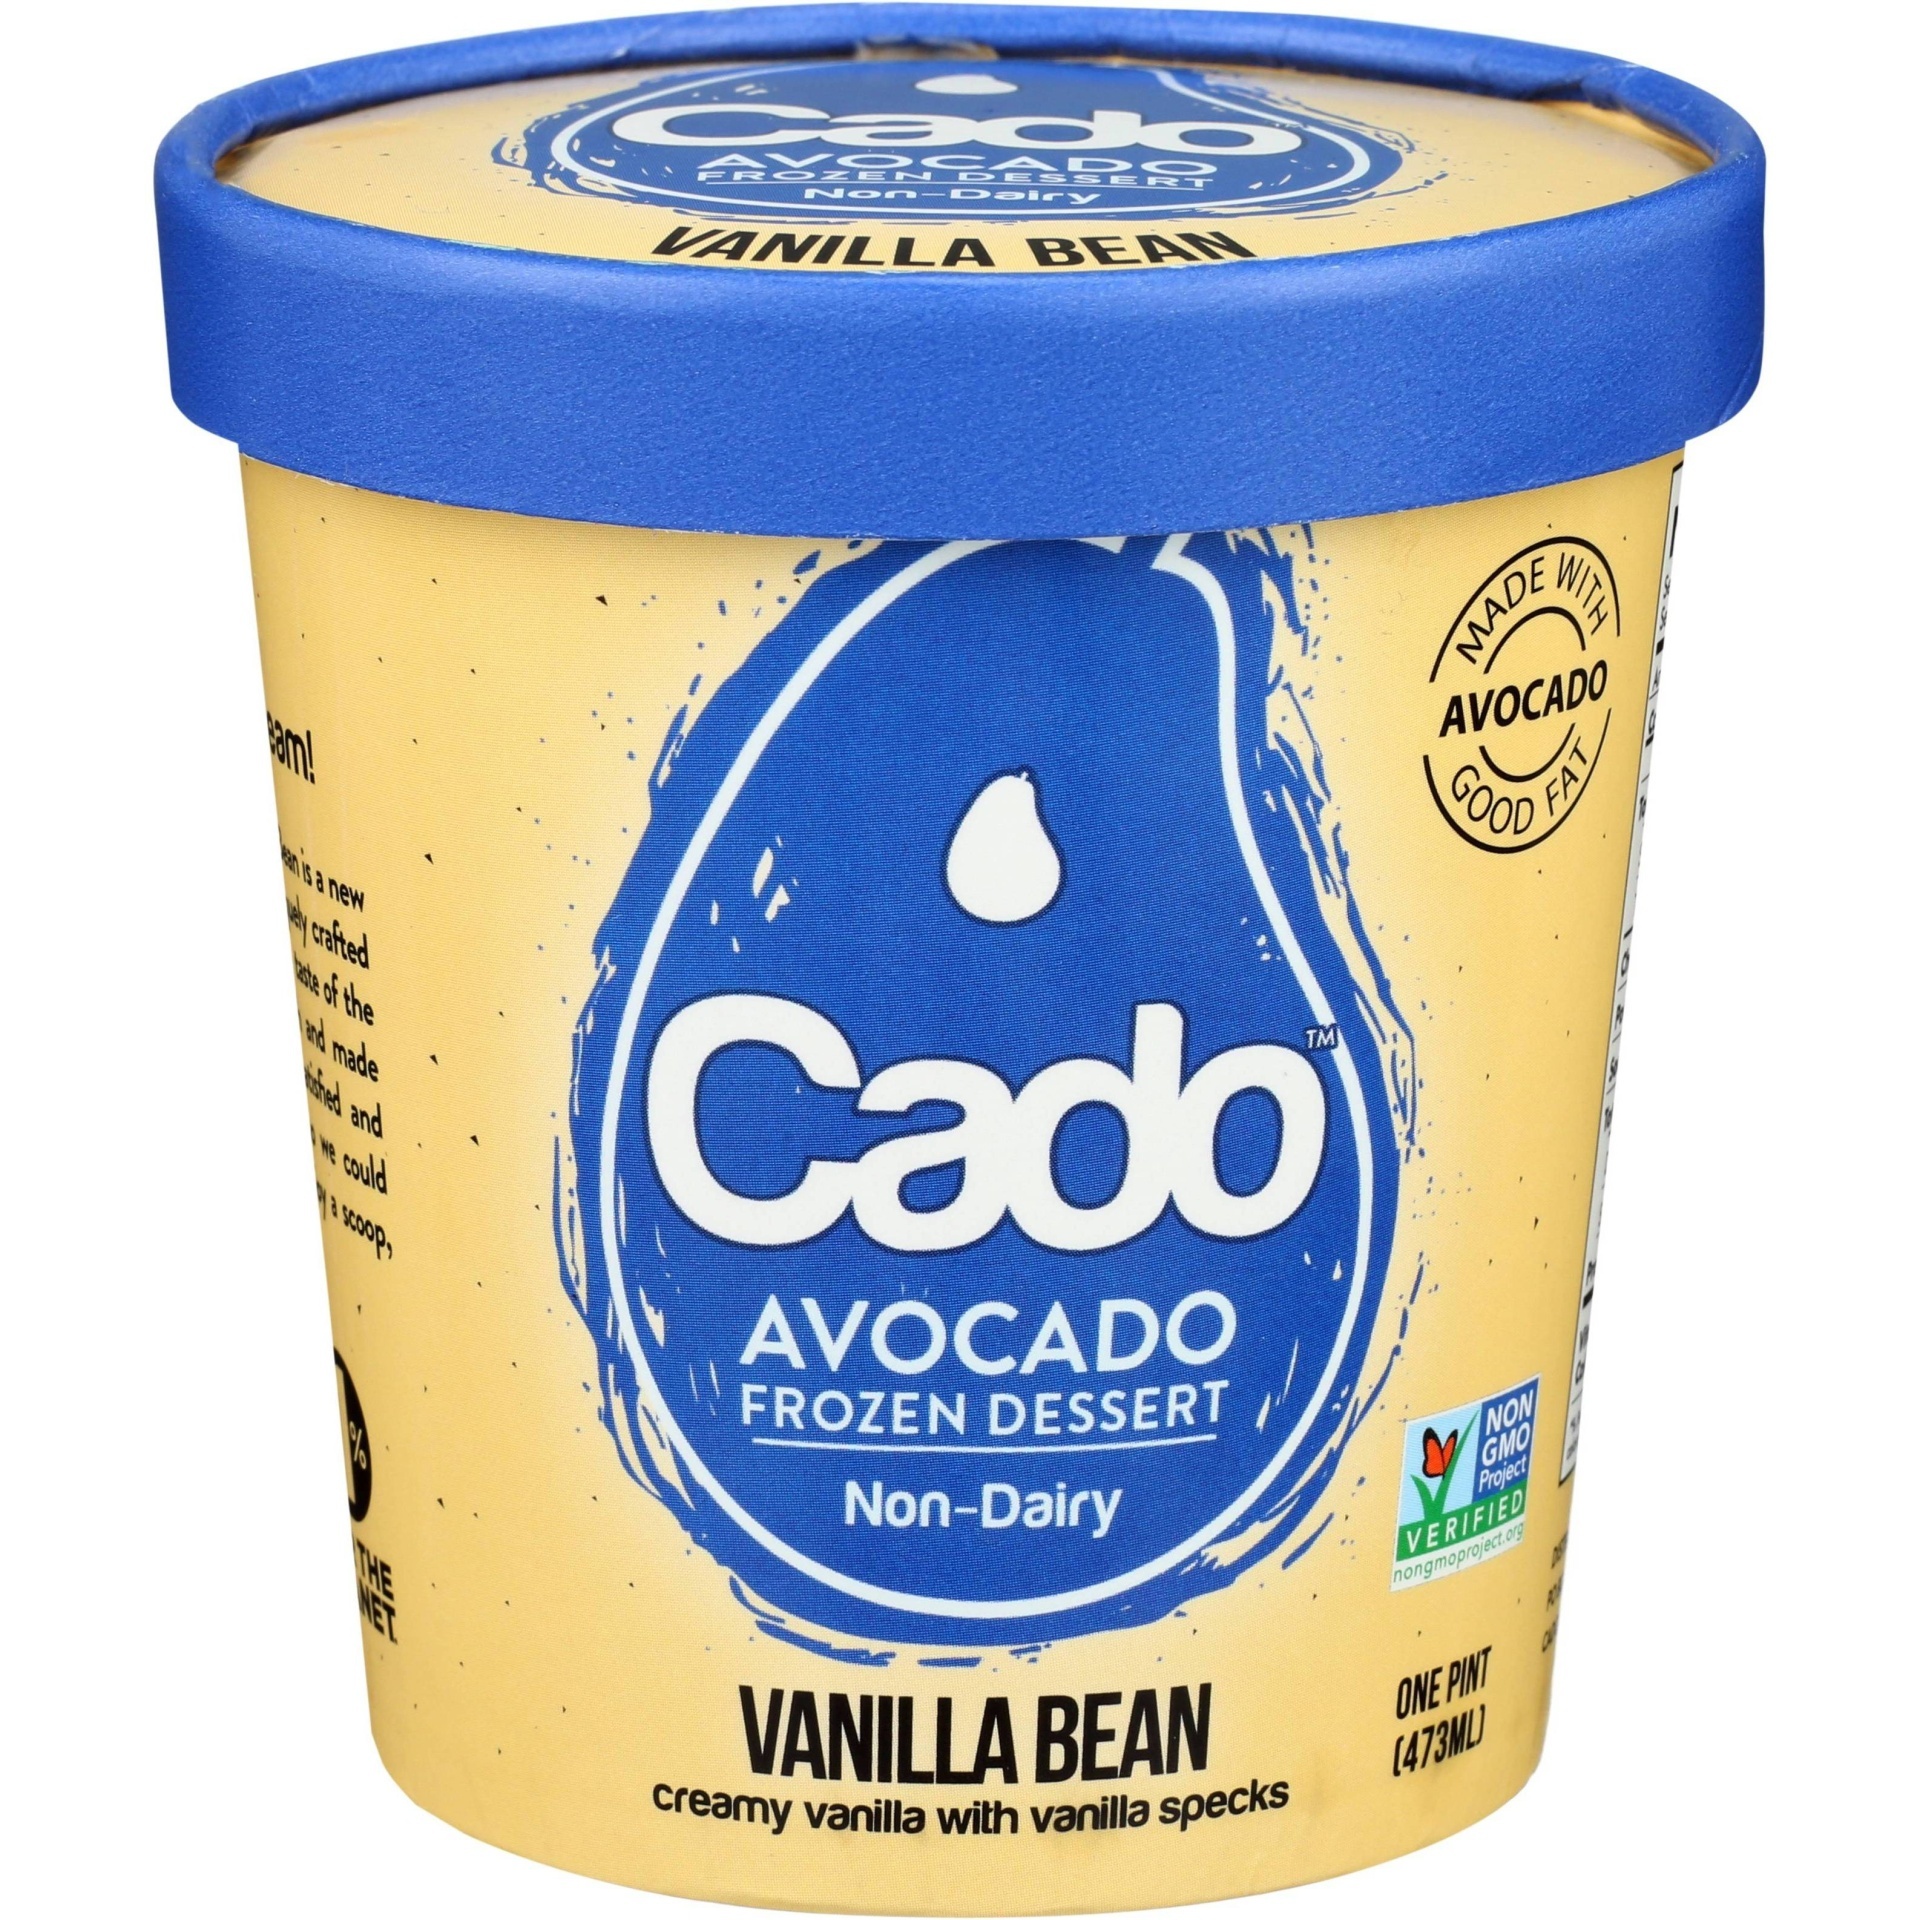 slide 1 of 2, Cado Non-Dairy Avocado Frozen Dessert - Vanilla Bean, 1 pint